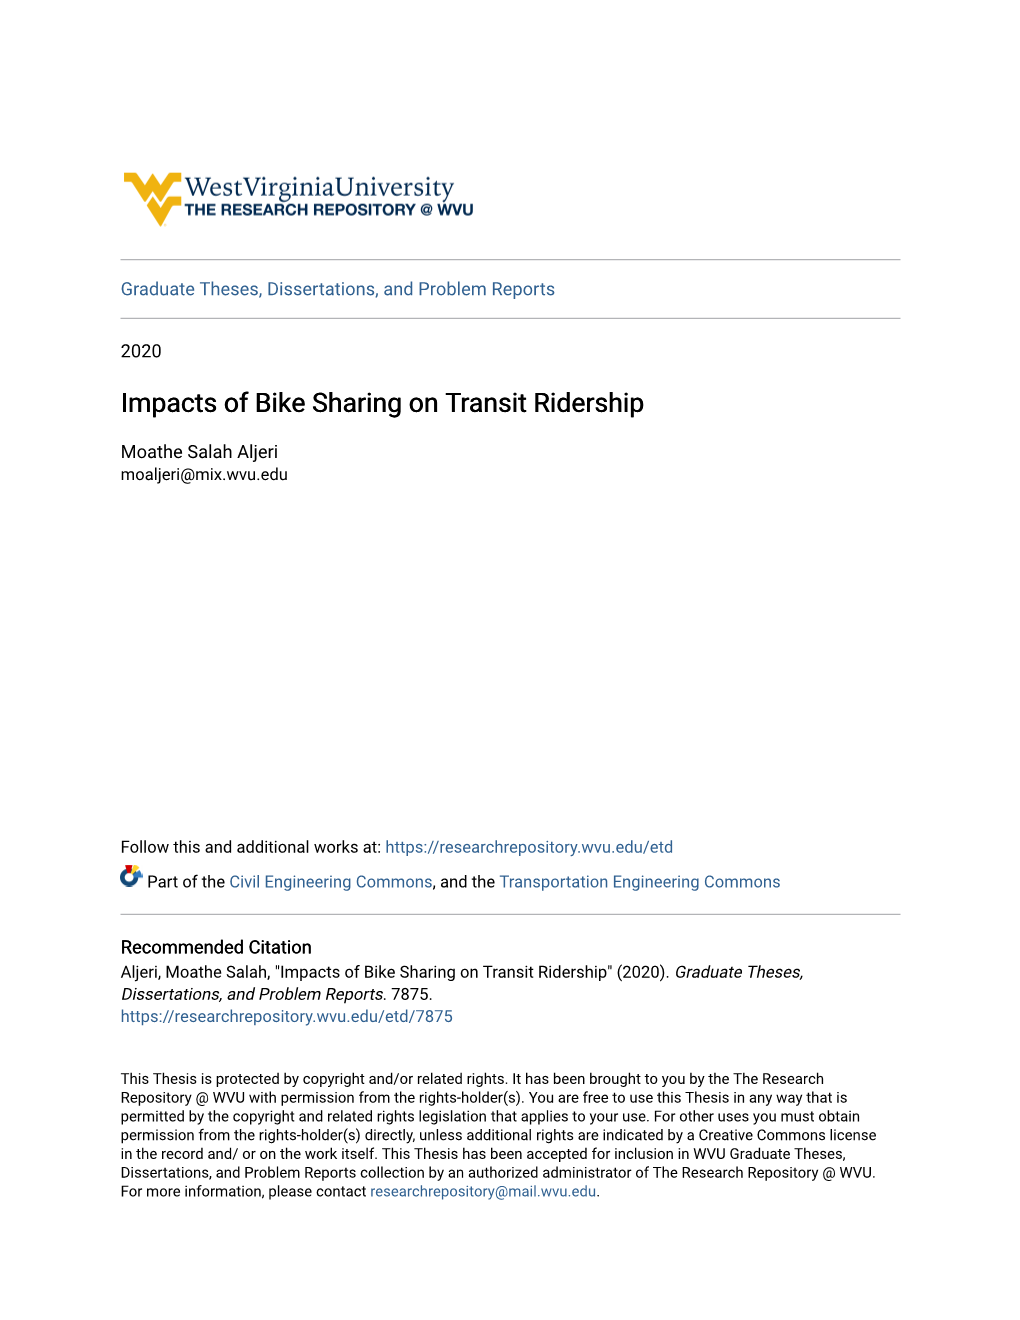 Impacts of Bike Sharing on Transit Ridership